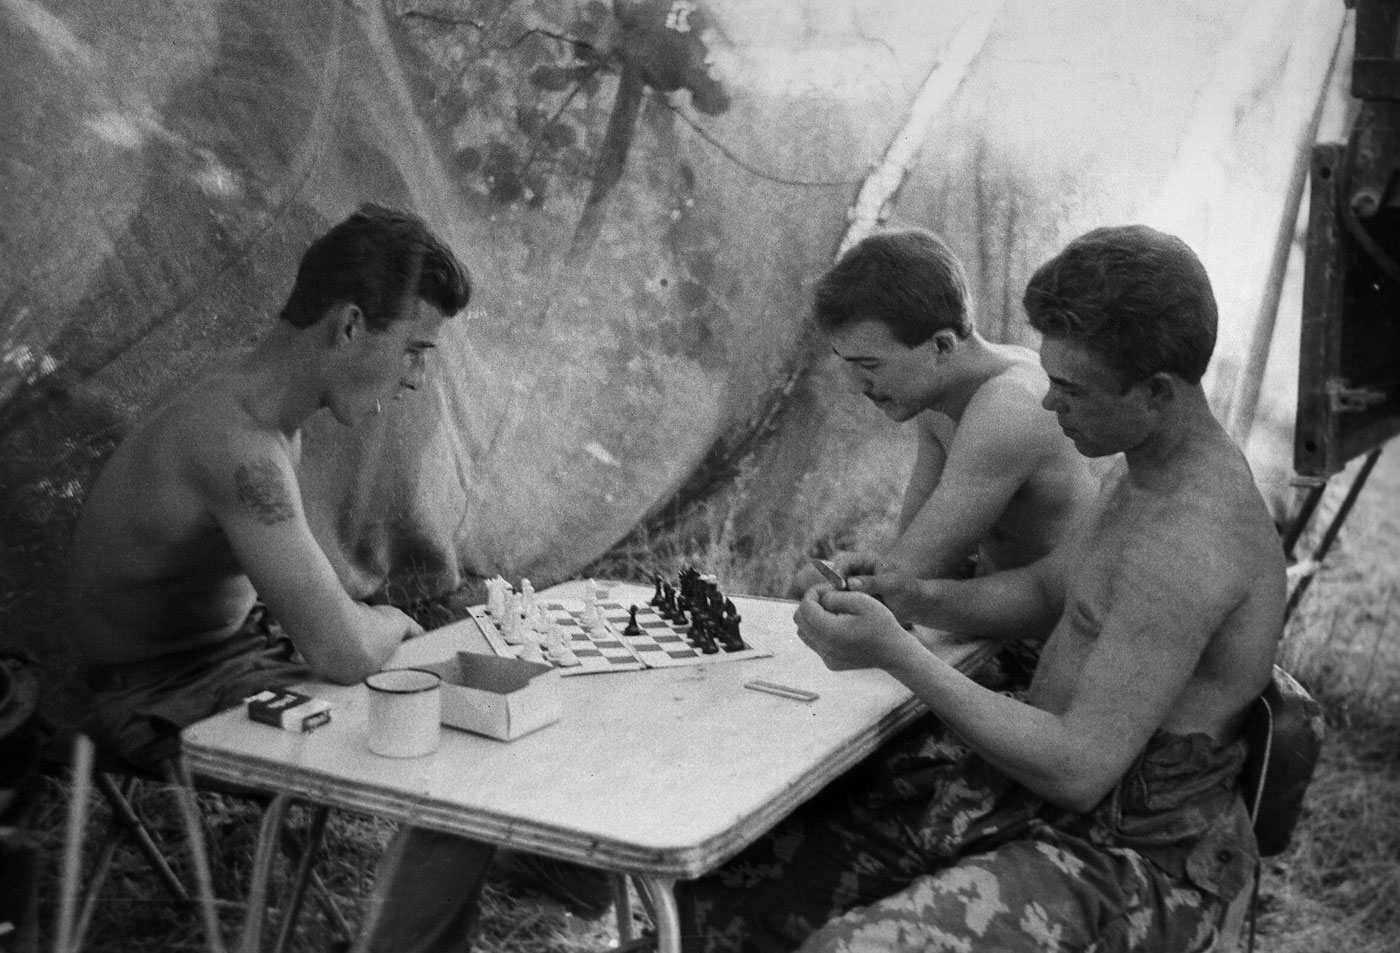 1985. Soldati sovietici in Afganistan giocano a scacchi nella provincia di Nangarhar